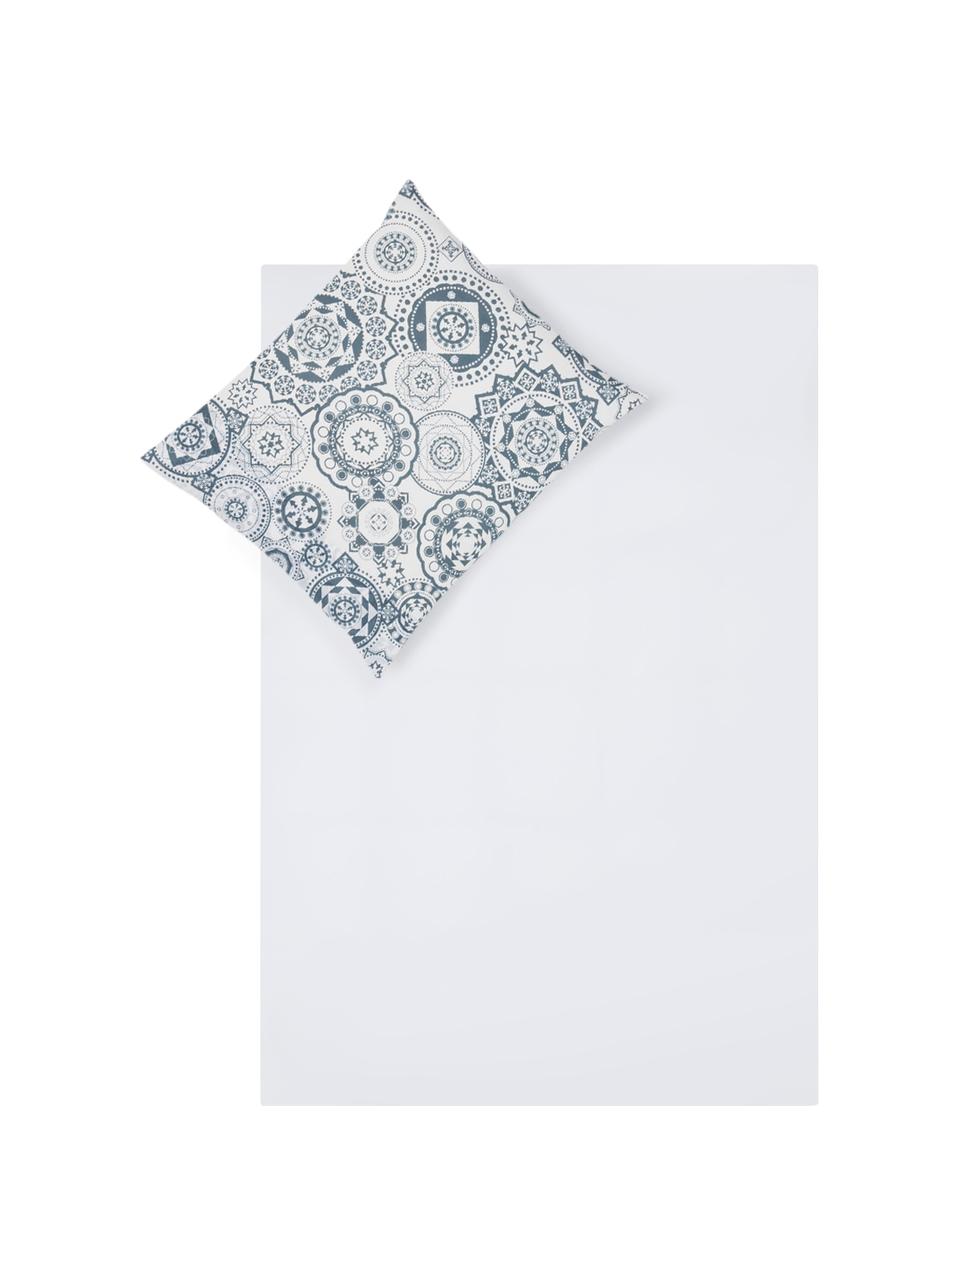 Dubbelzijdig dekbedovertrek Morris, Katoen, Bovenzijde: blauw, wit. Onderzijde: wit, 140 x 200 cm